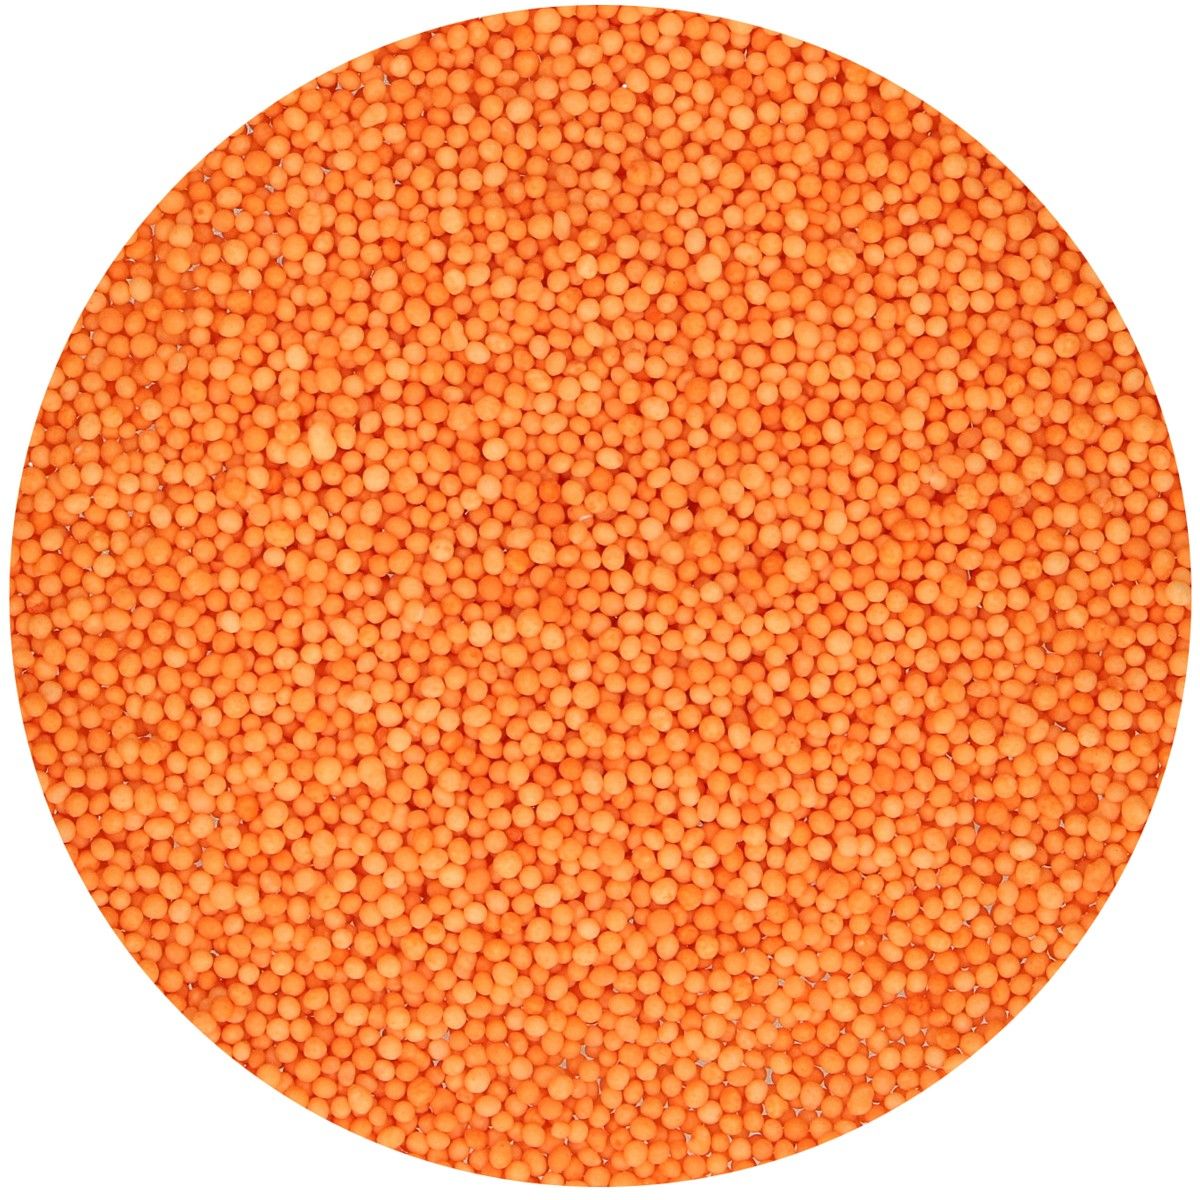 FunCakes Nonpareils -orange- 80g